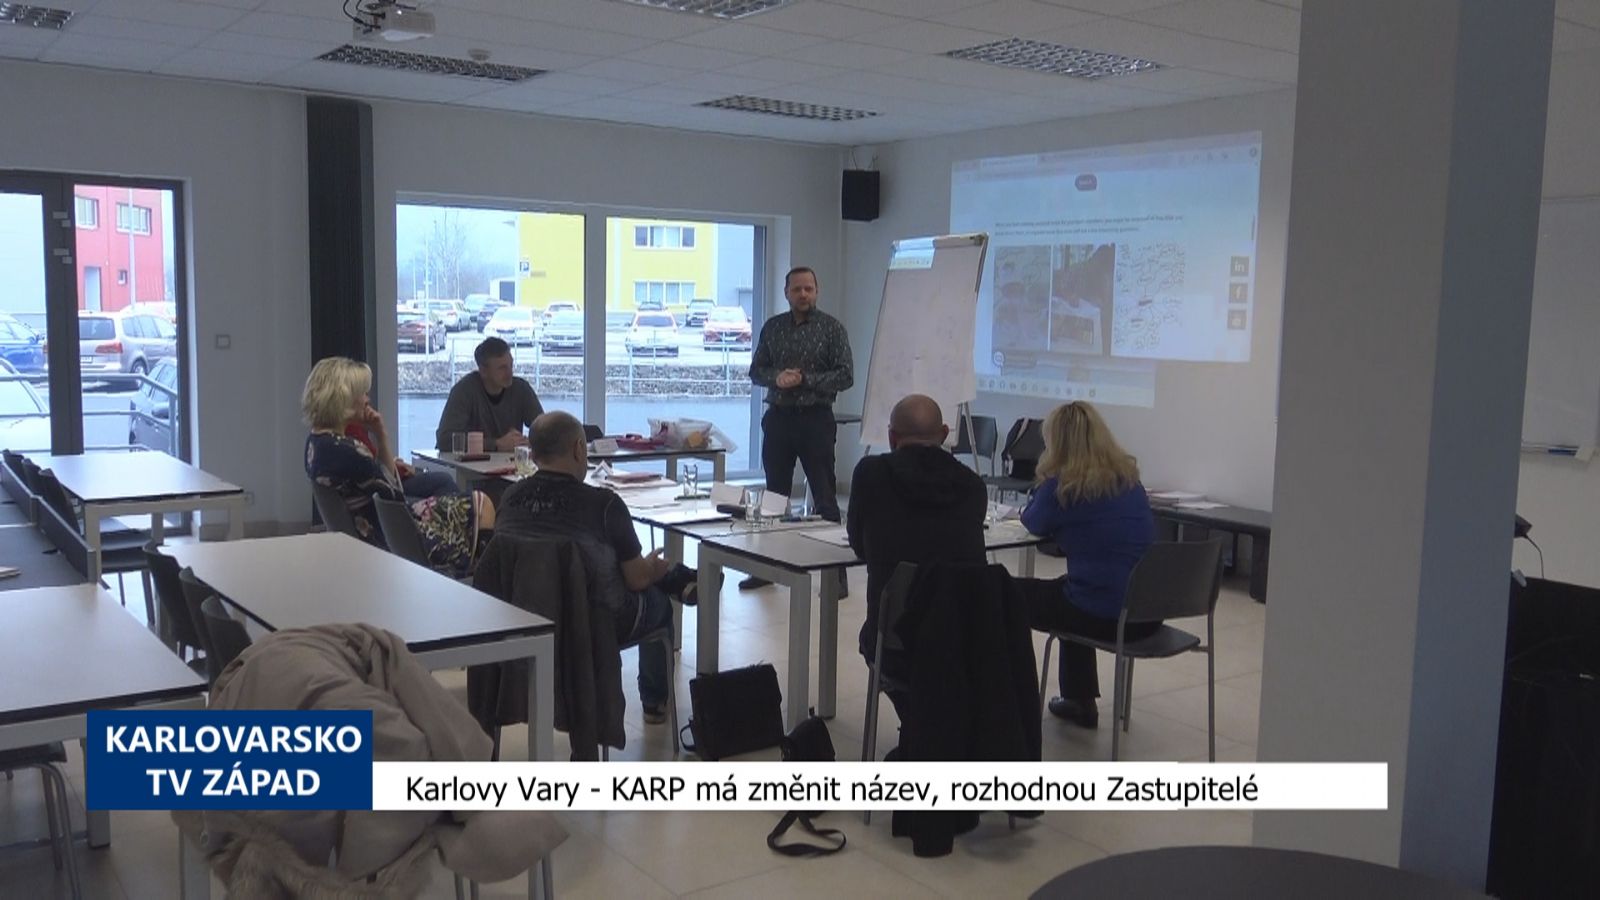 Karlovy Vary: KARP má změnit název, rozhodnou Zastupitelé (TV Západ)